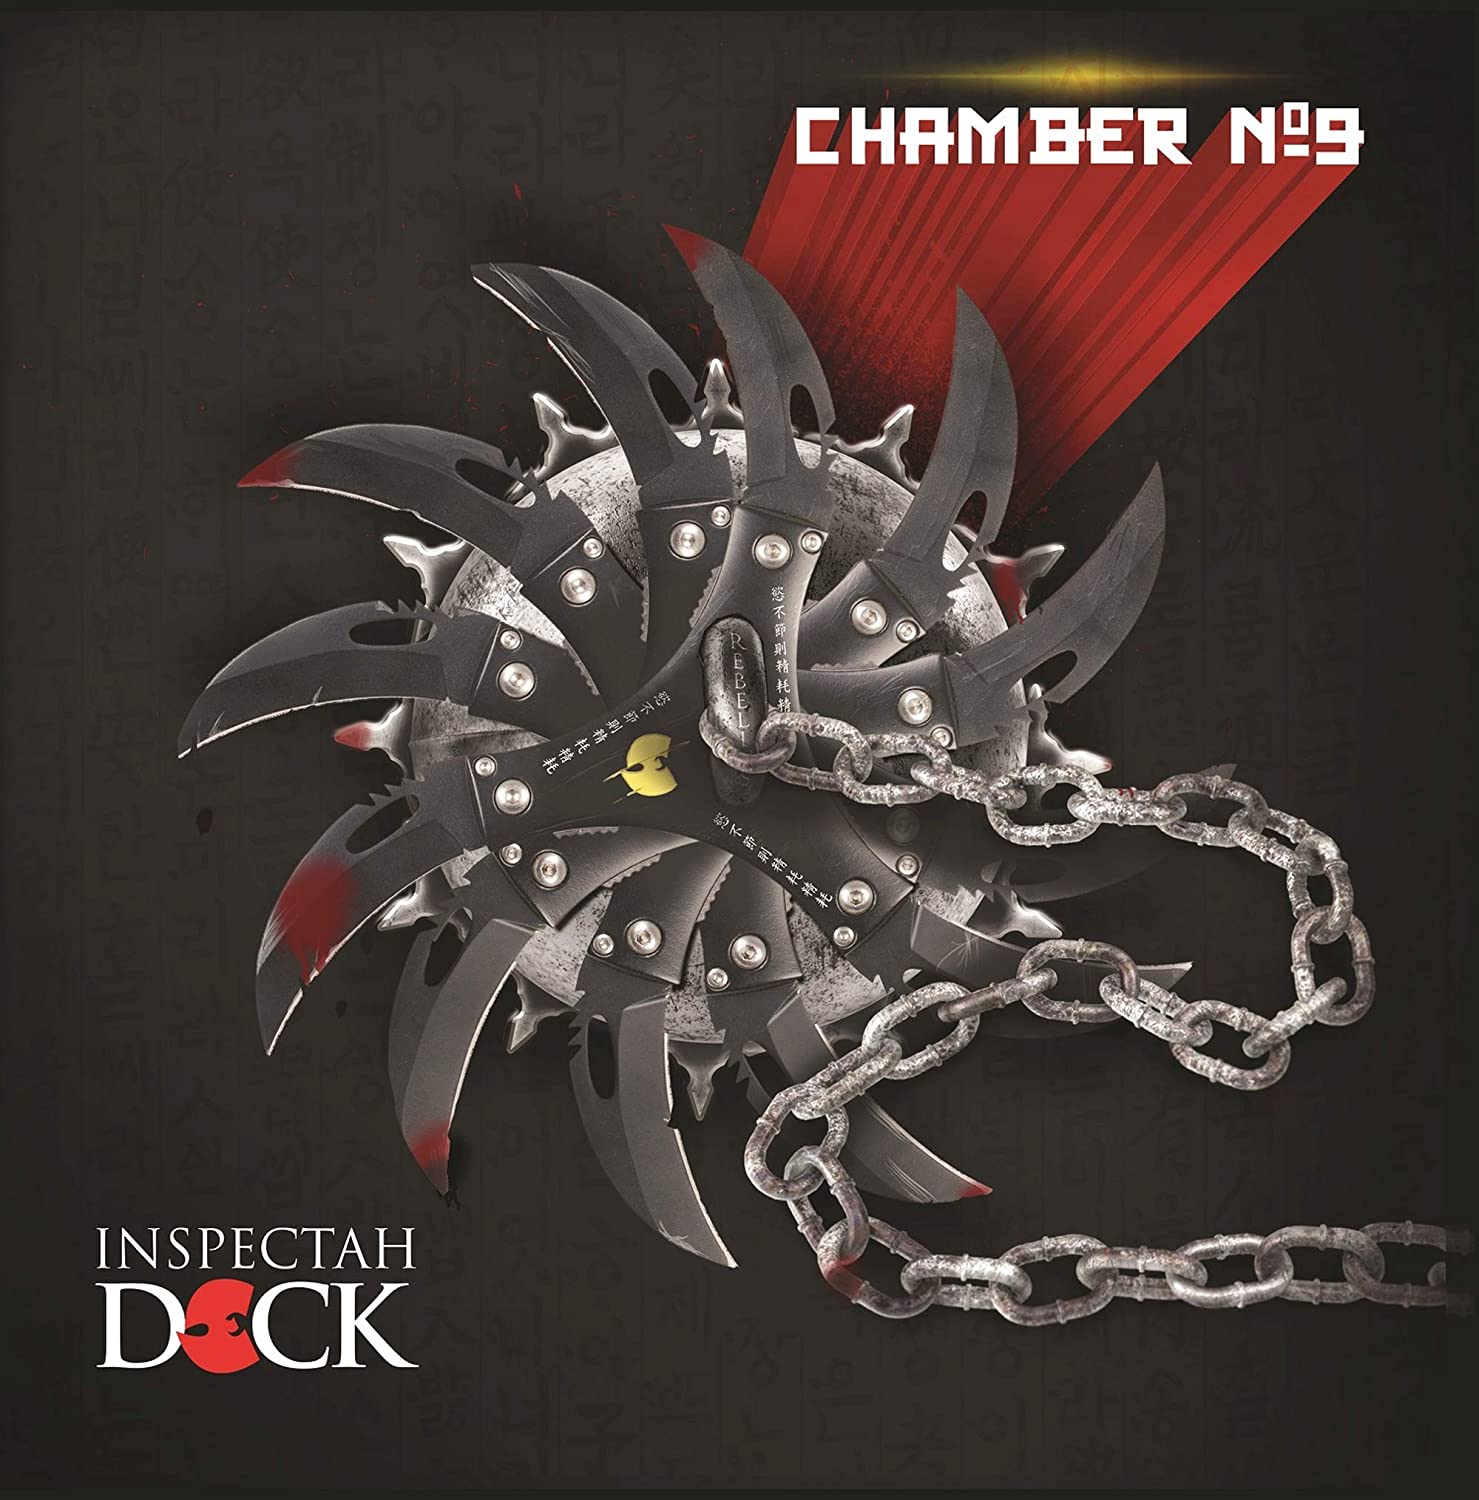 INSPECTAH DECK - CHAMBER NO. 9 Vinyl LP